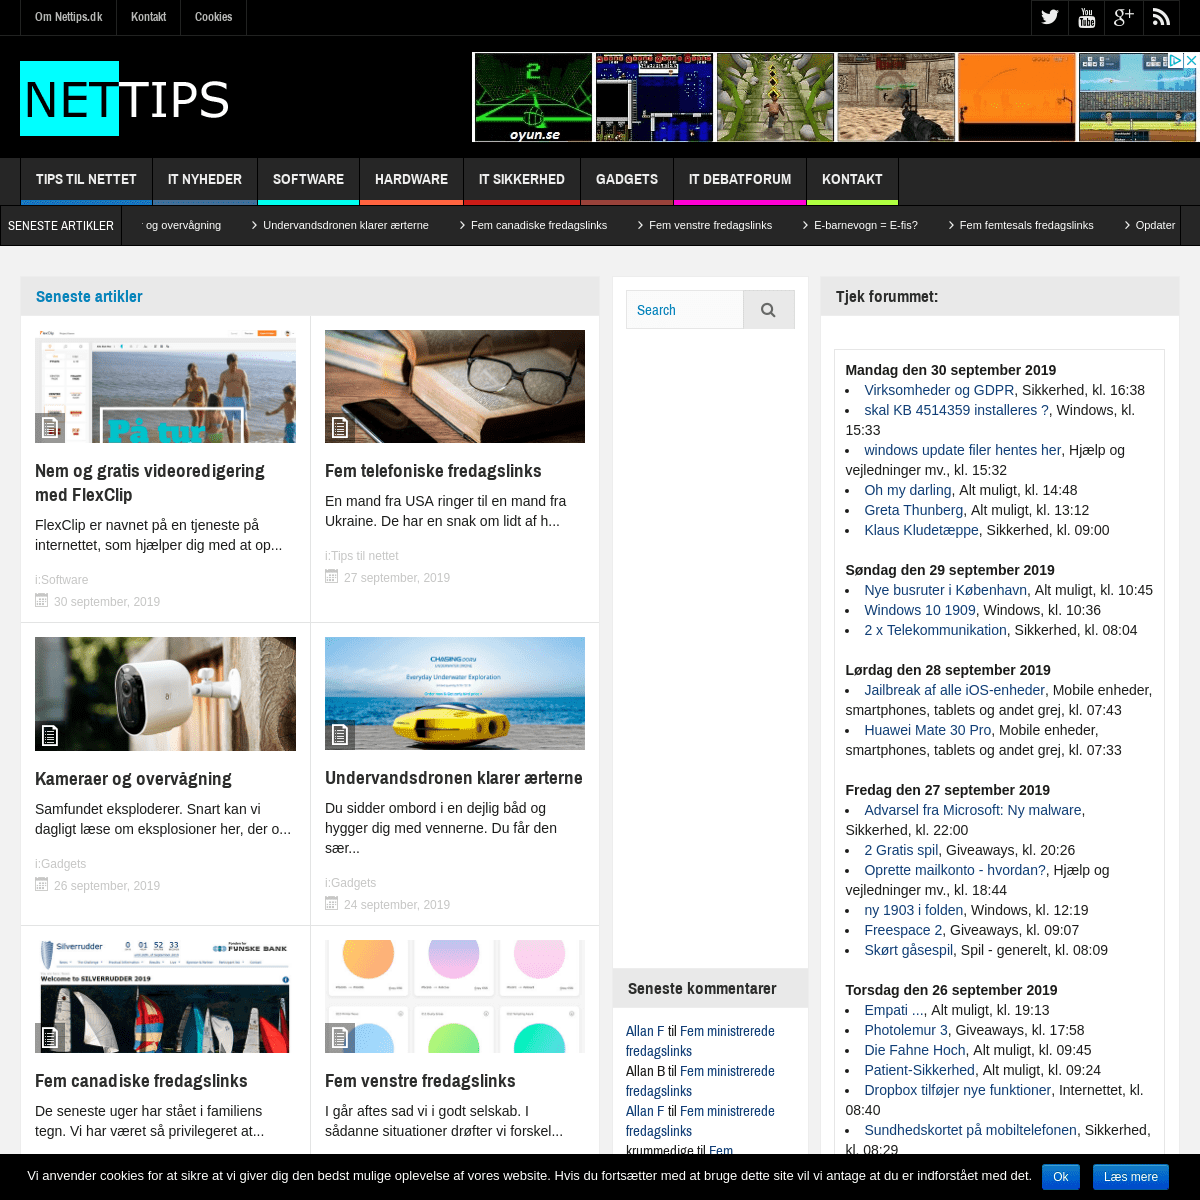 Nettips.dk | IT artikler og IT nyheder om smartphones og apps